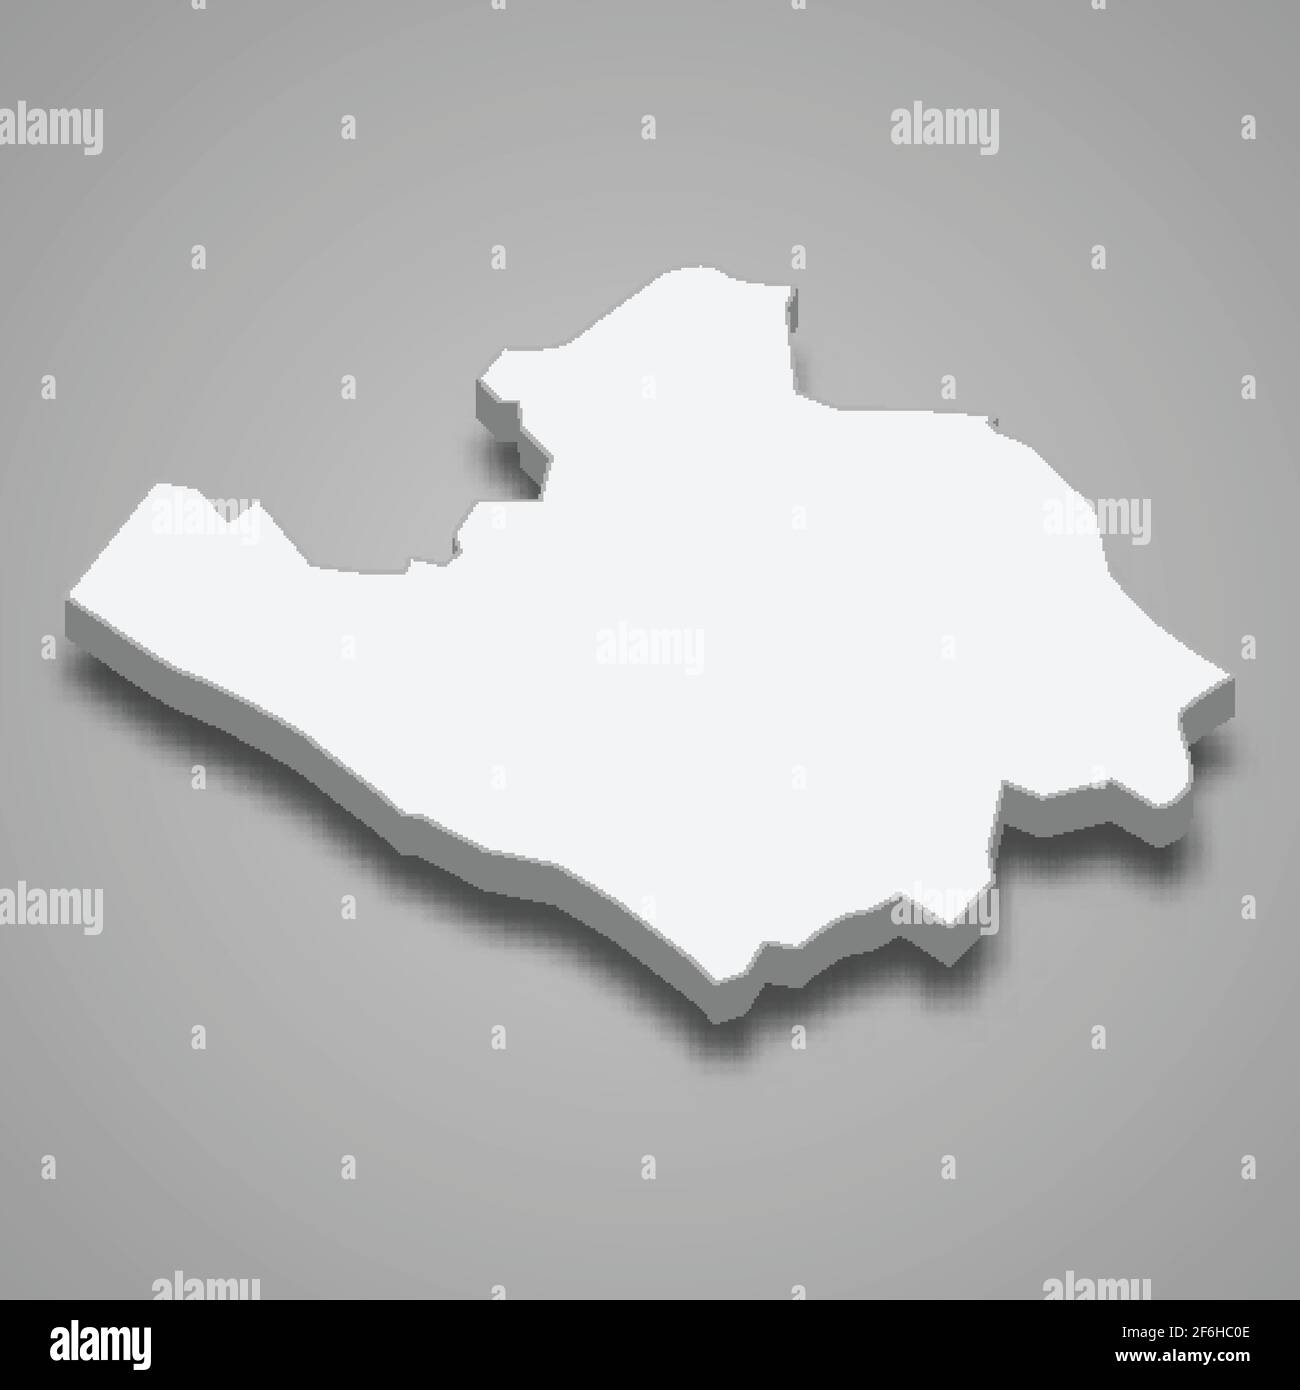 Mappa isometrica 3d della provincia di Vinh Long in Vietnam, illustrazione vettoriale Illustrazione Vettoriale